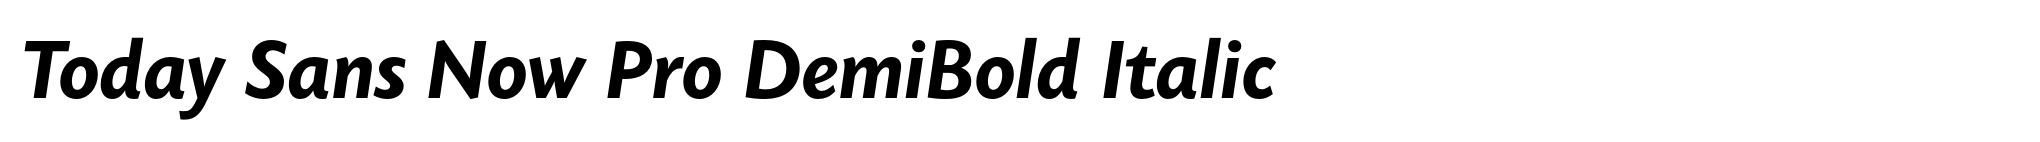 Today Sans Now Pro DemiBold Italic image